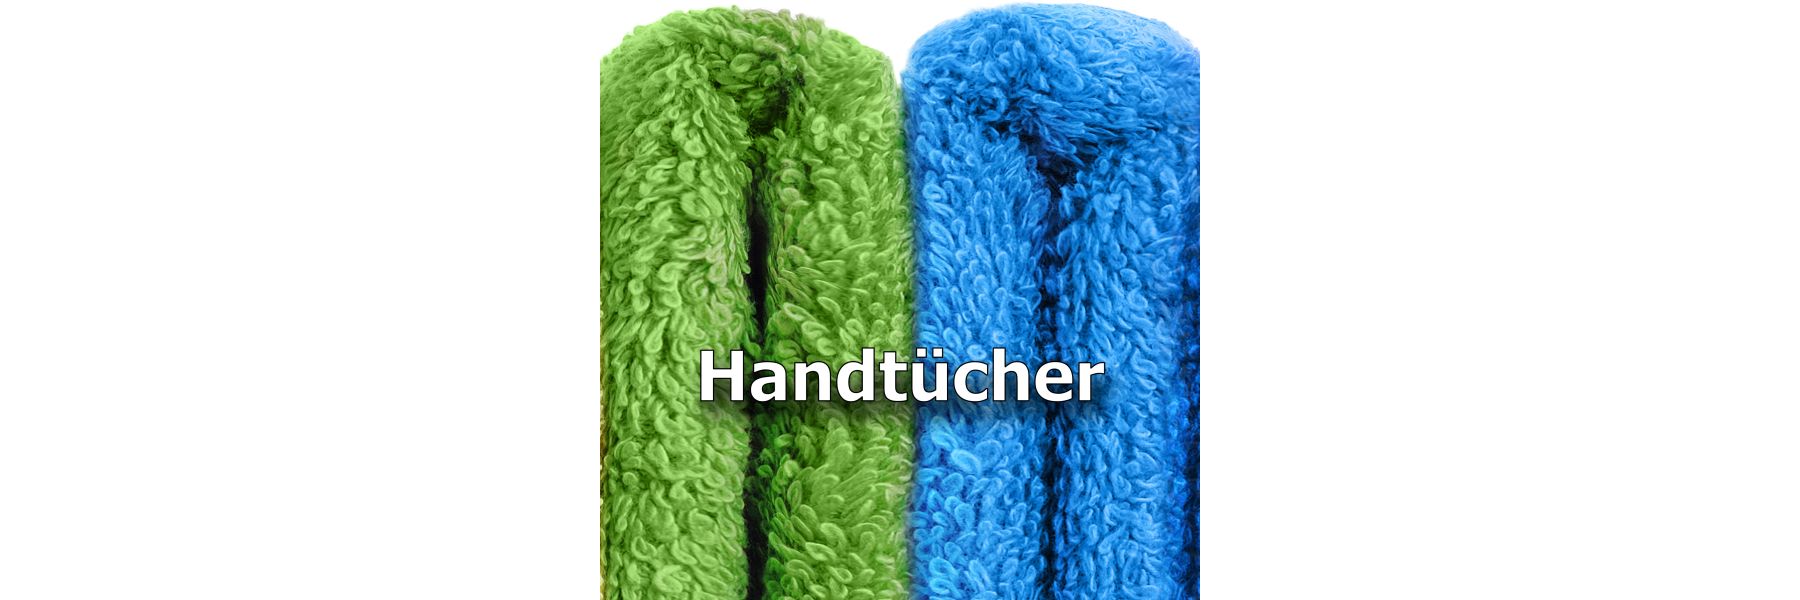 Handtücher - worauf man beim Kaufen sollte achten